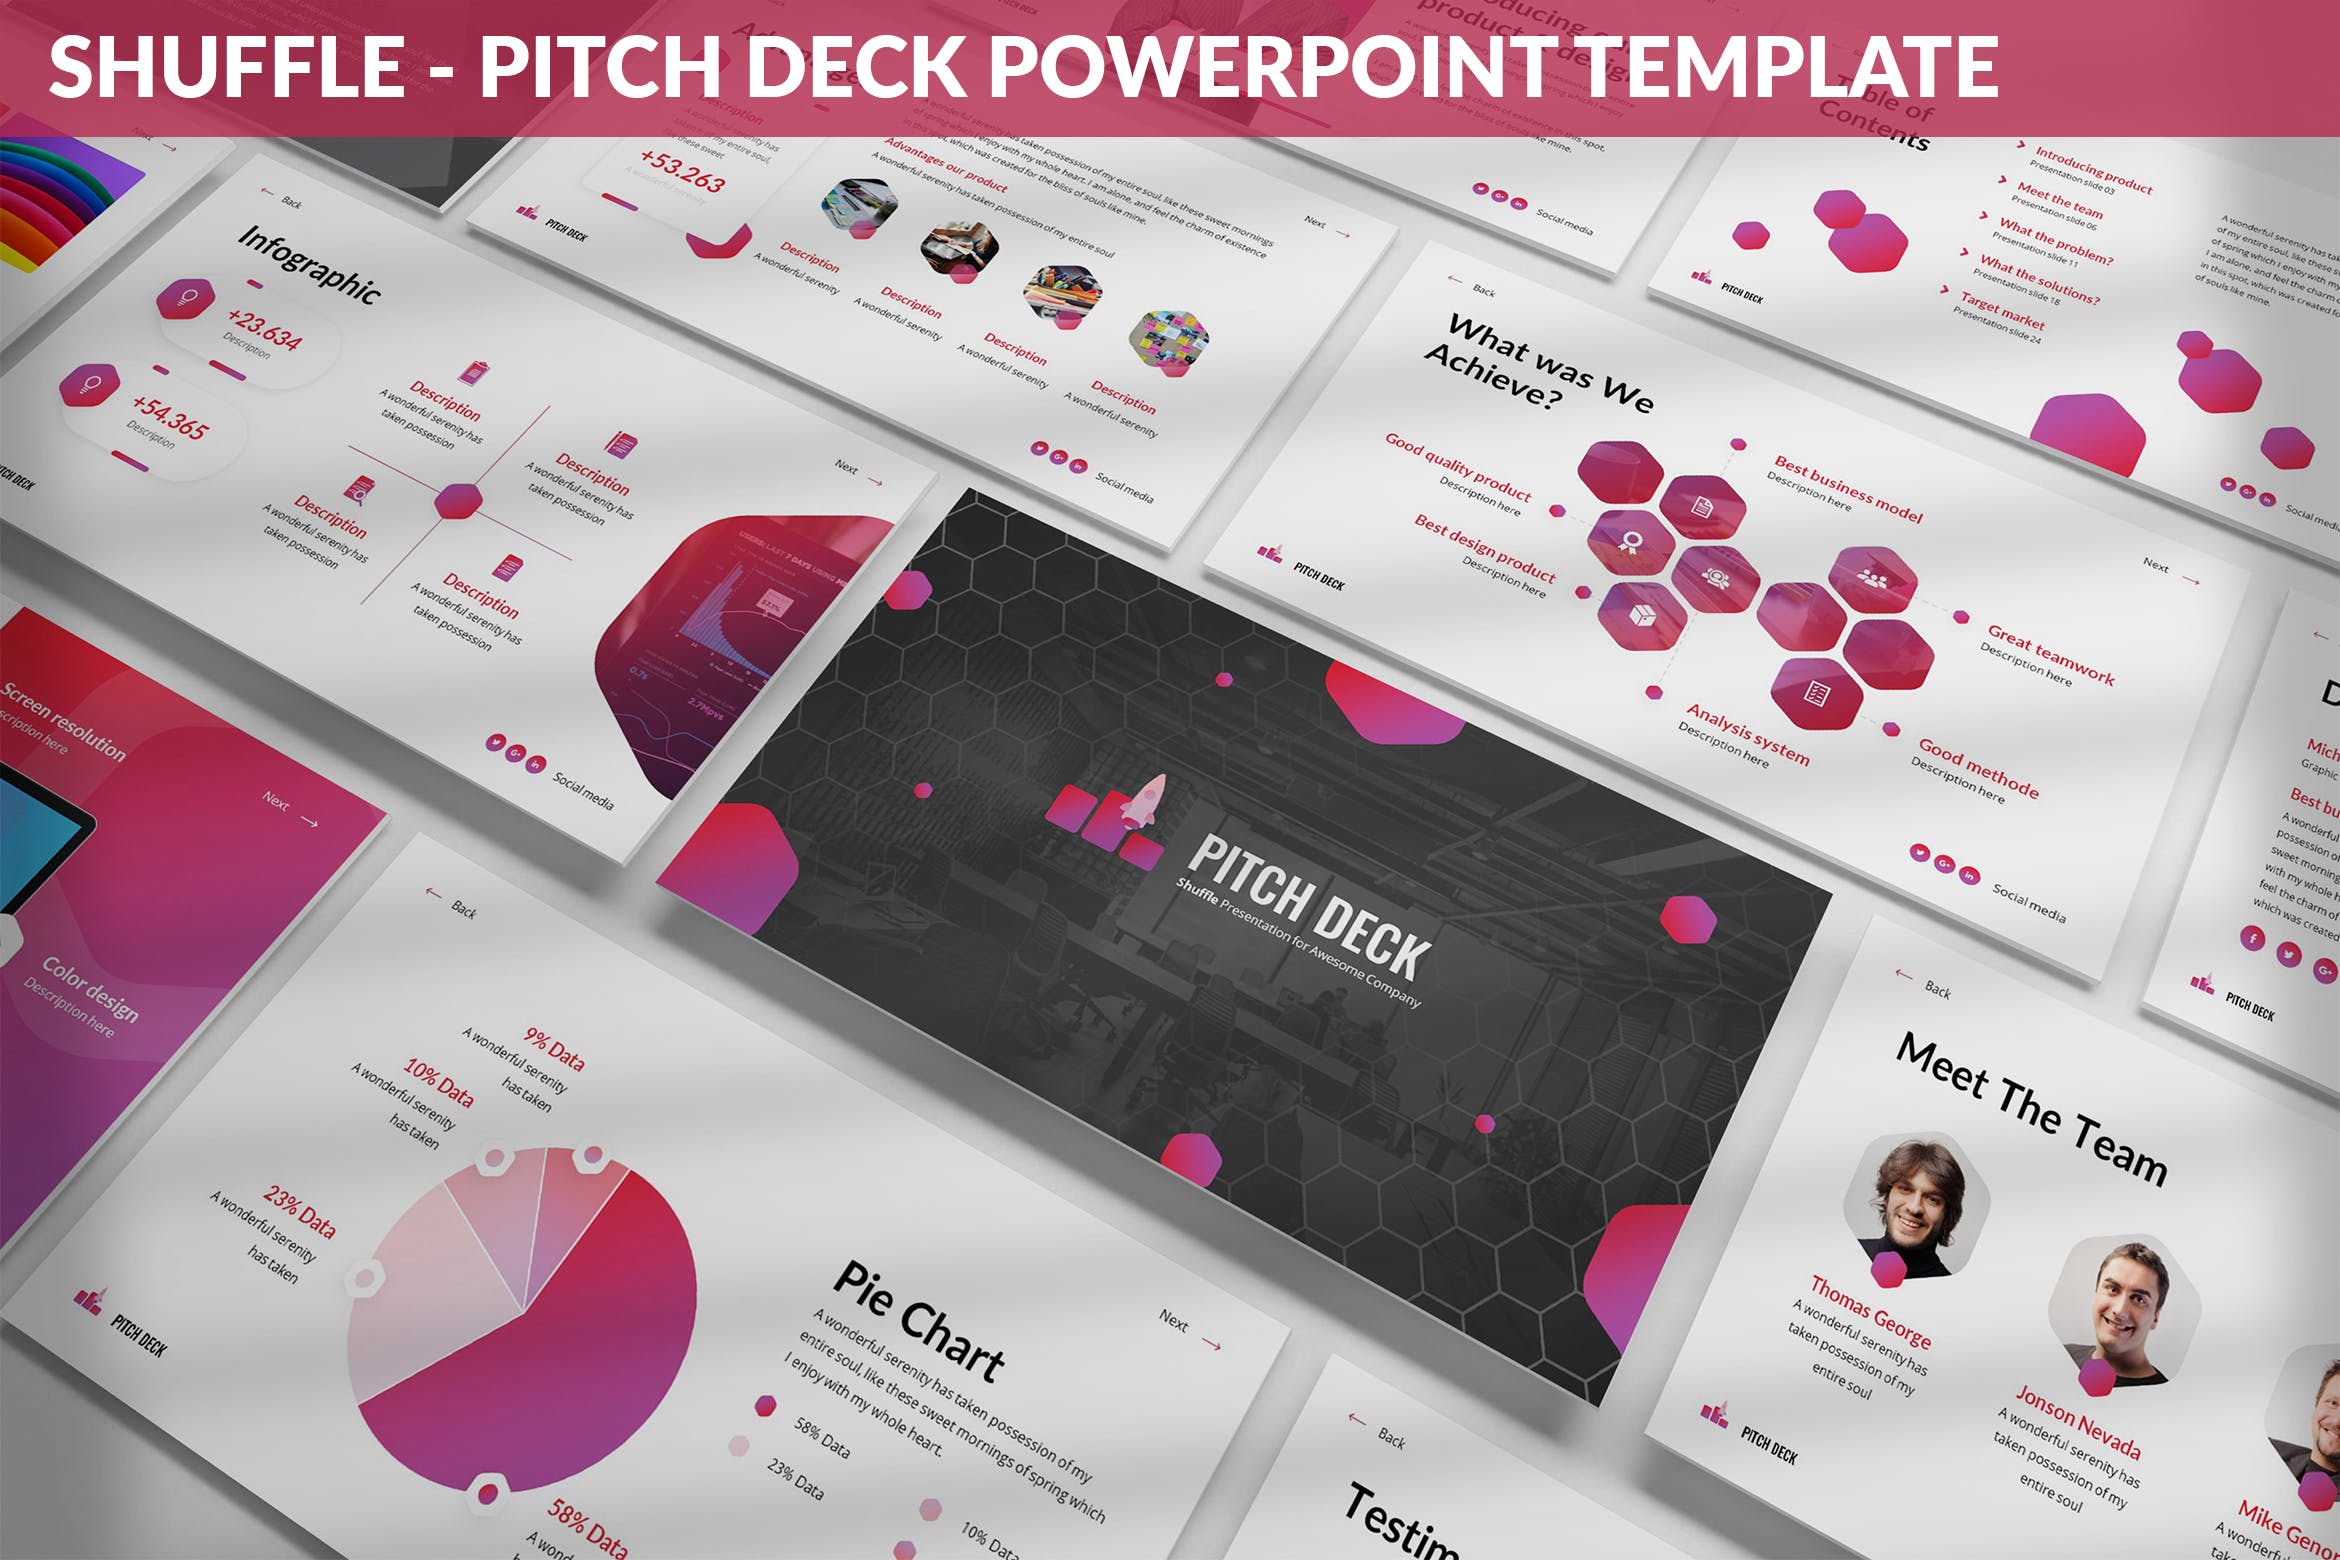 技术开发团队介绍Powerpoint模板 Shuffle – PitchDeck Powerpoint Template设计素材模板